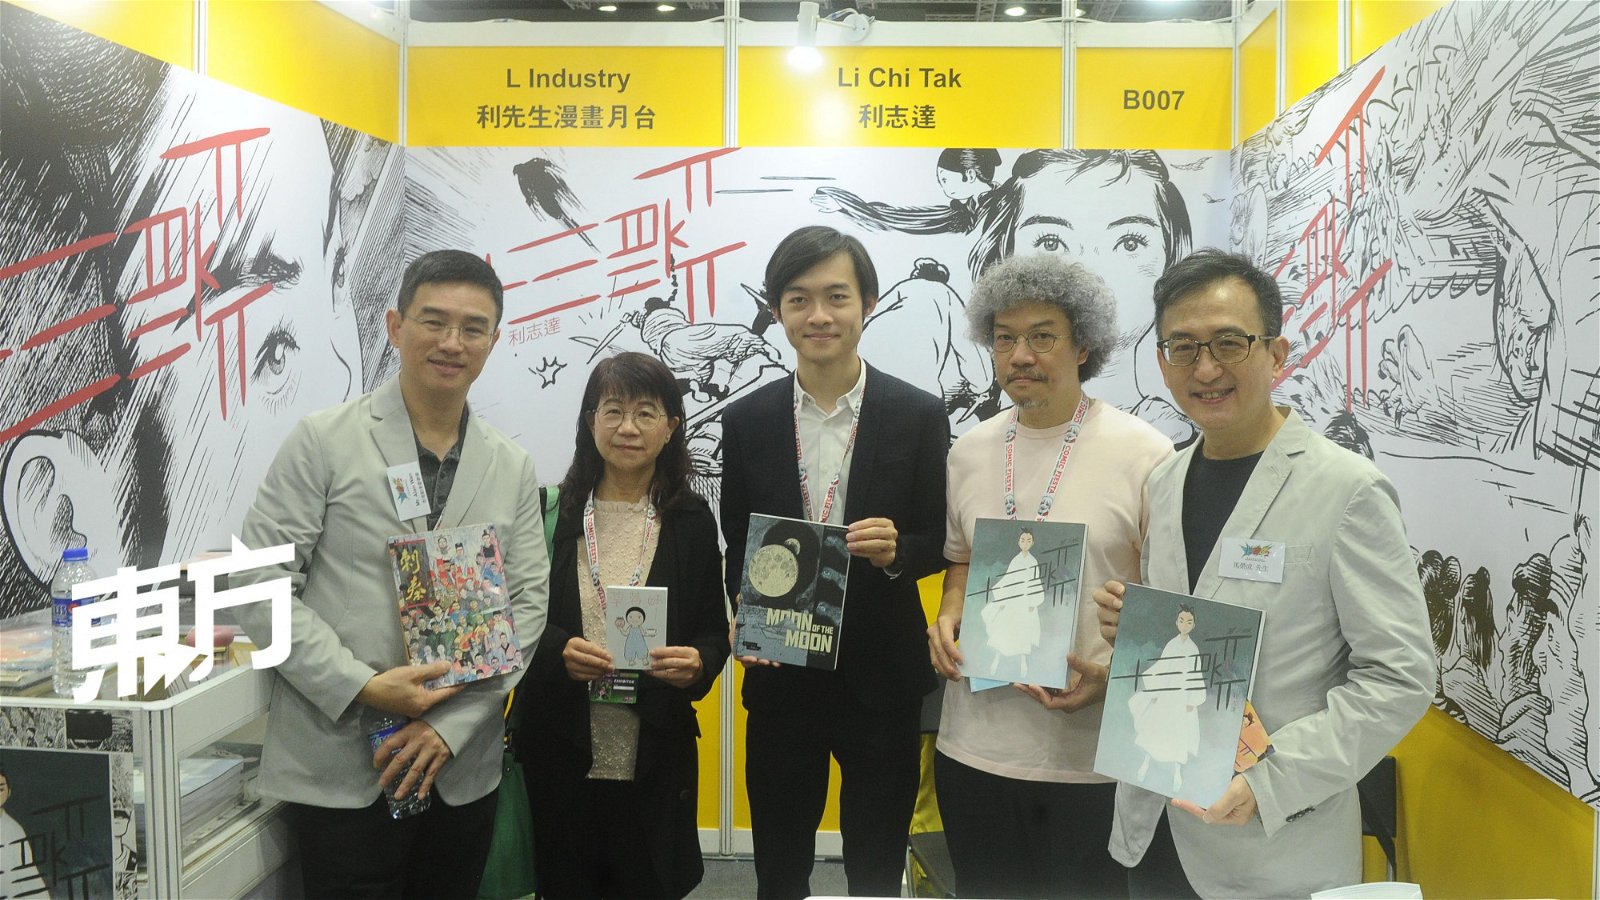 马荣成日前带领第二届《港漫动力》的15位入选漫画家来到马来西亚与大家见面。